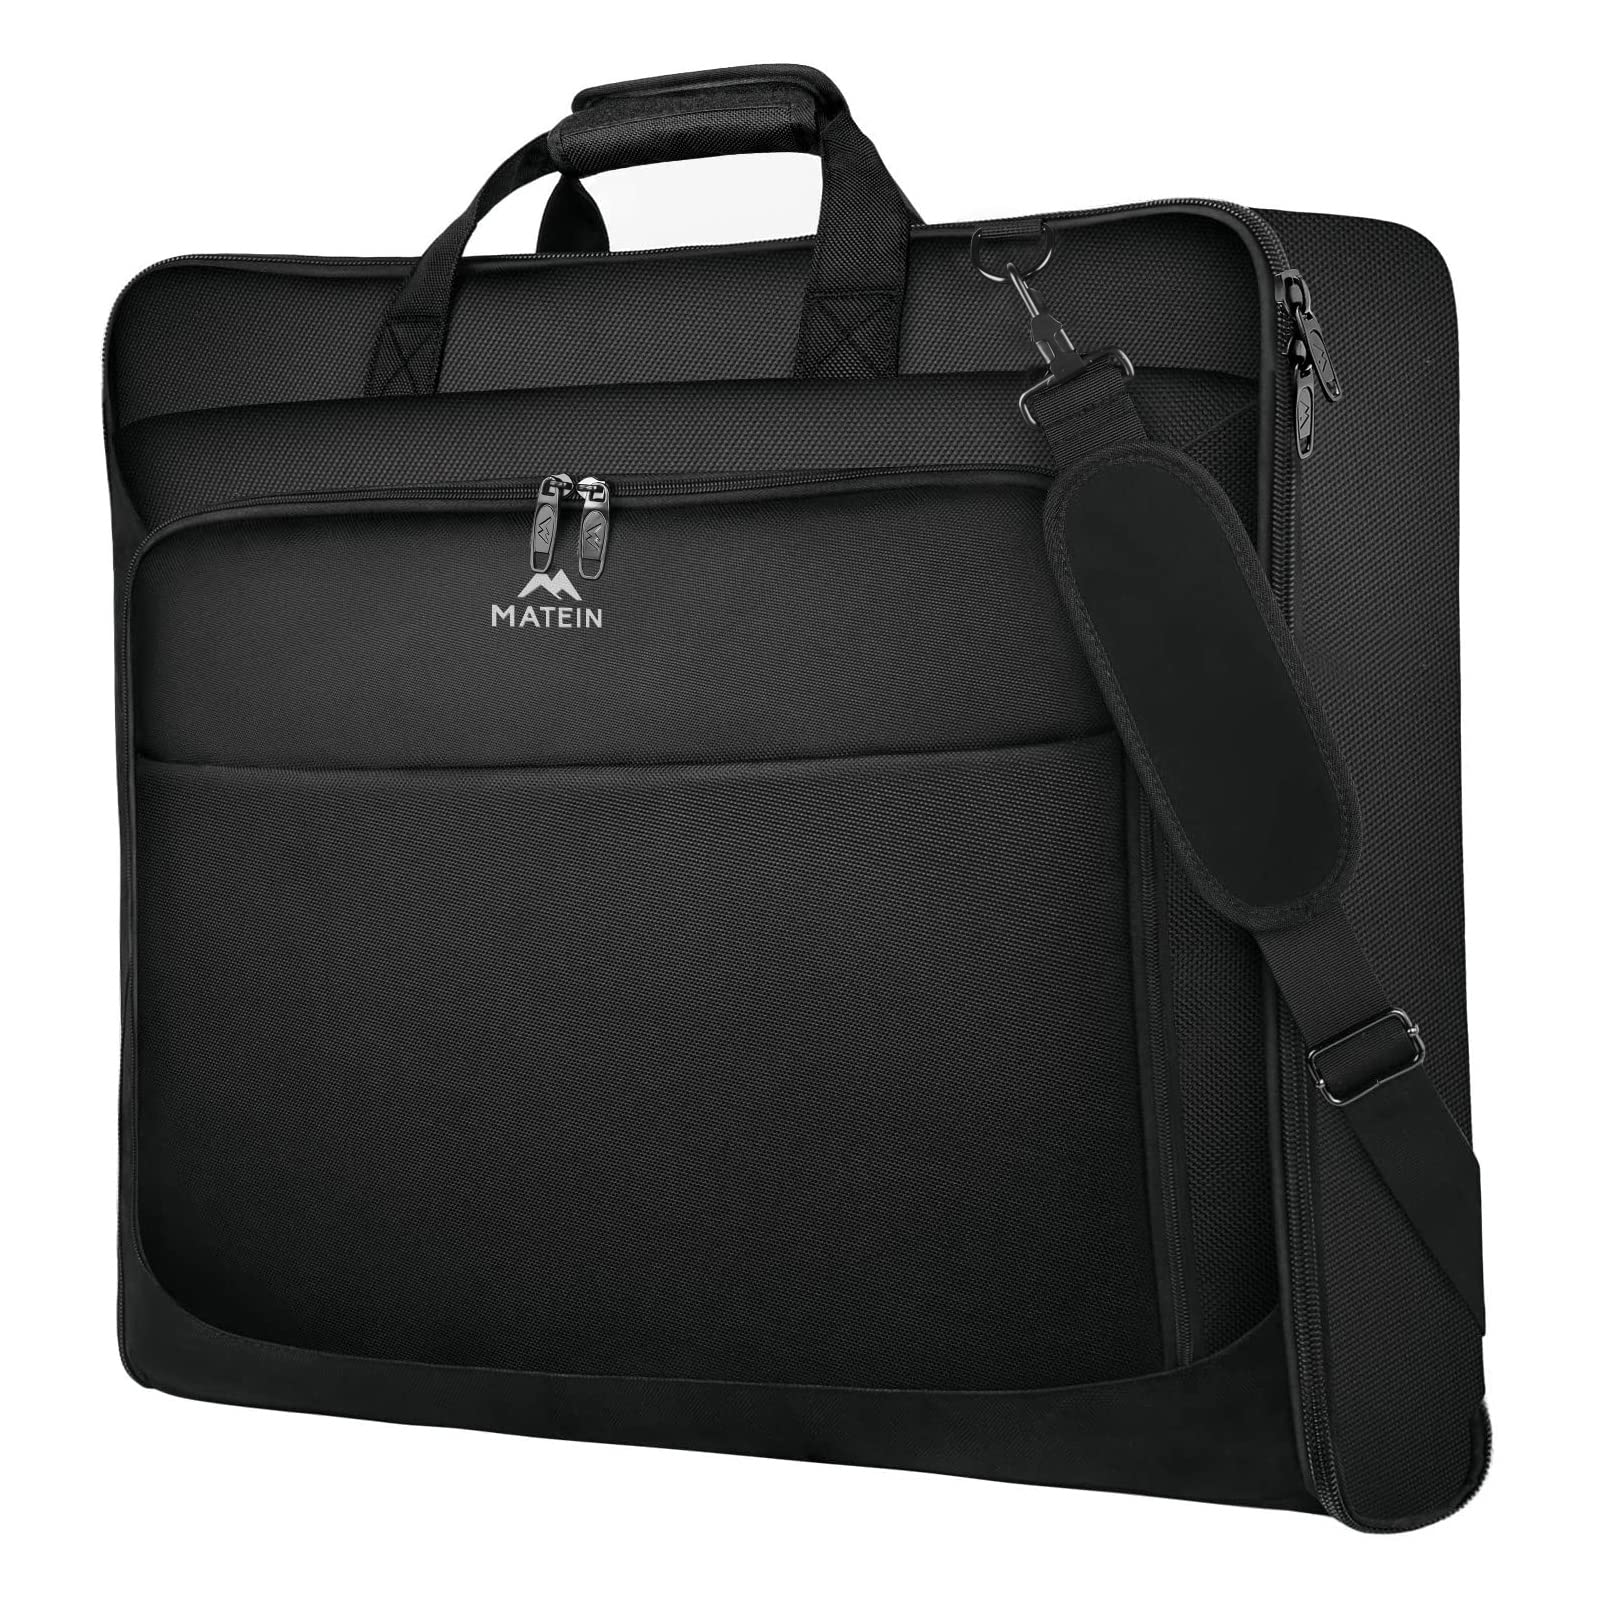 送料無料MATEIN Garment Bag for Travel Large Carry on Garment Bags with Strap for Business Waterproof Hanging Suit Lugga